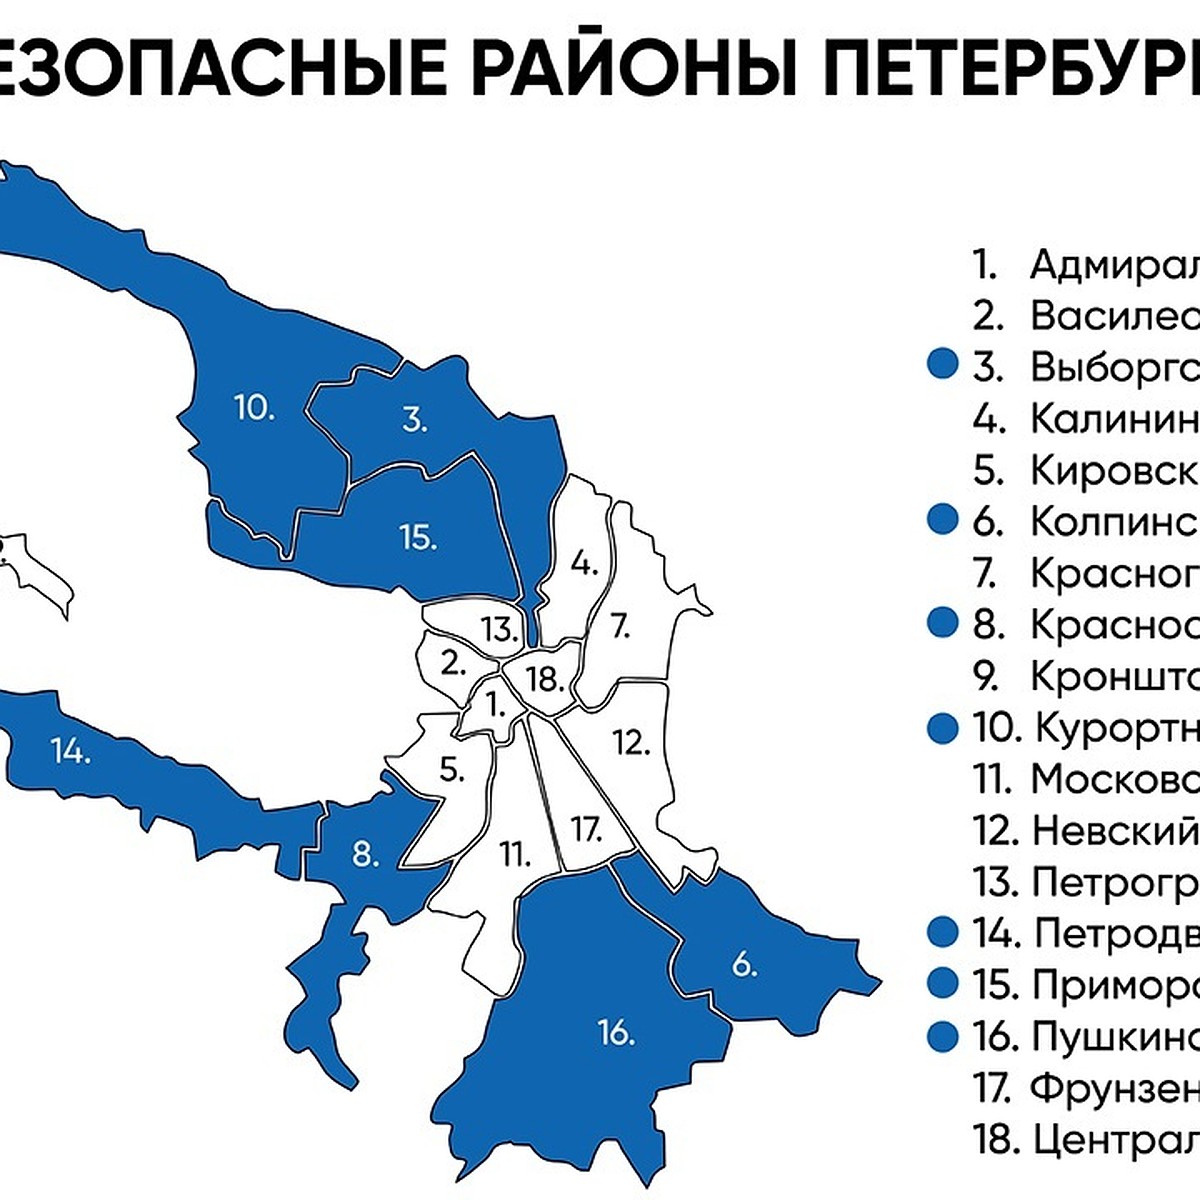 Какие районы эвакуируют. Районы СПБ. Схема районов Санкт-Петербурга. Районы Петербурга на карте. Безопасные районы Санкт-Петербурга.